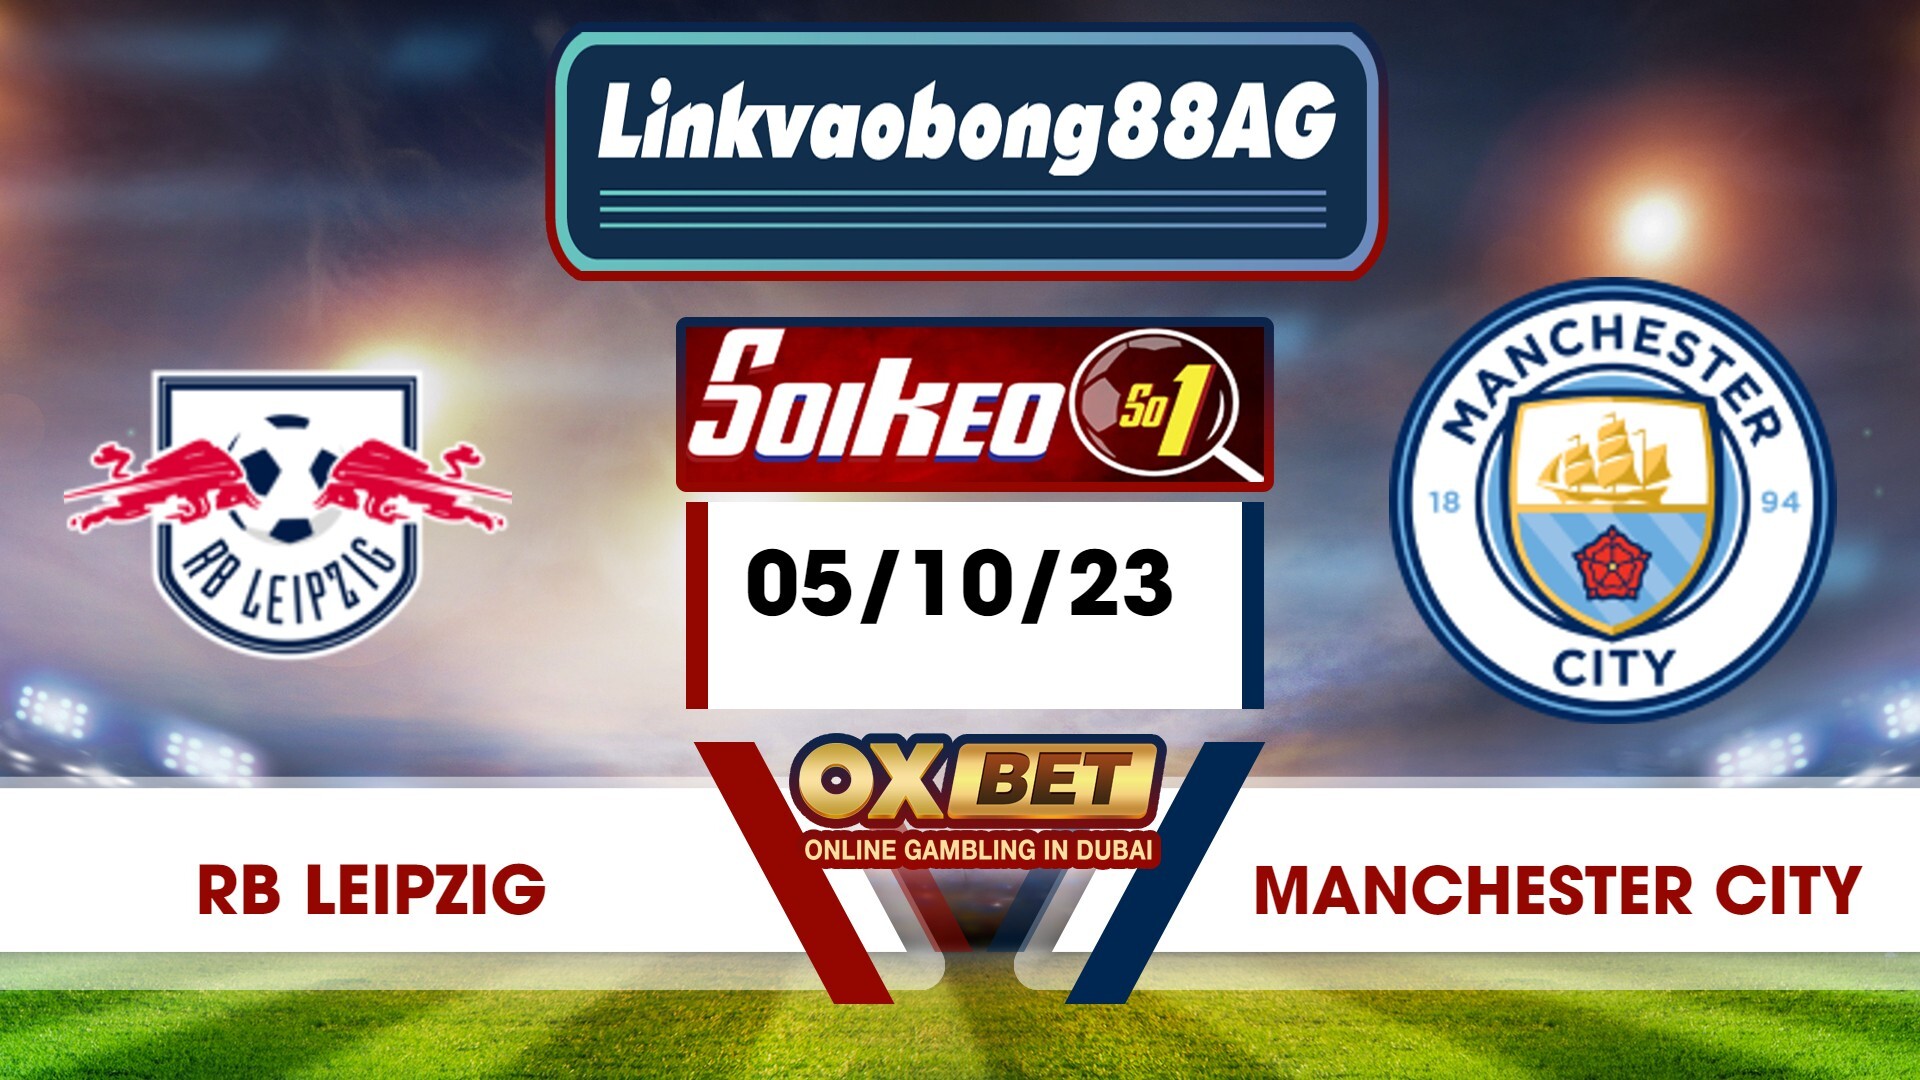 Soi kèo Bong88 RB Leipzig vs Manchester City – 05/10/2023 – 02h00 sáng